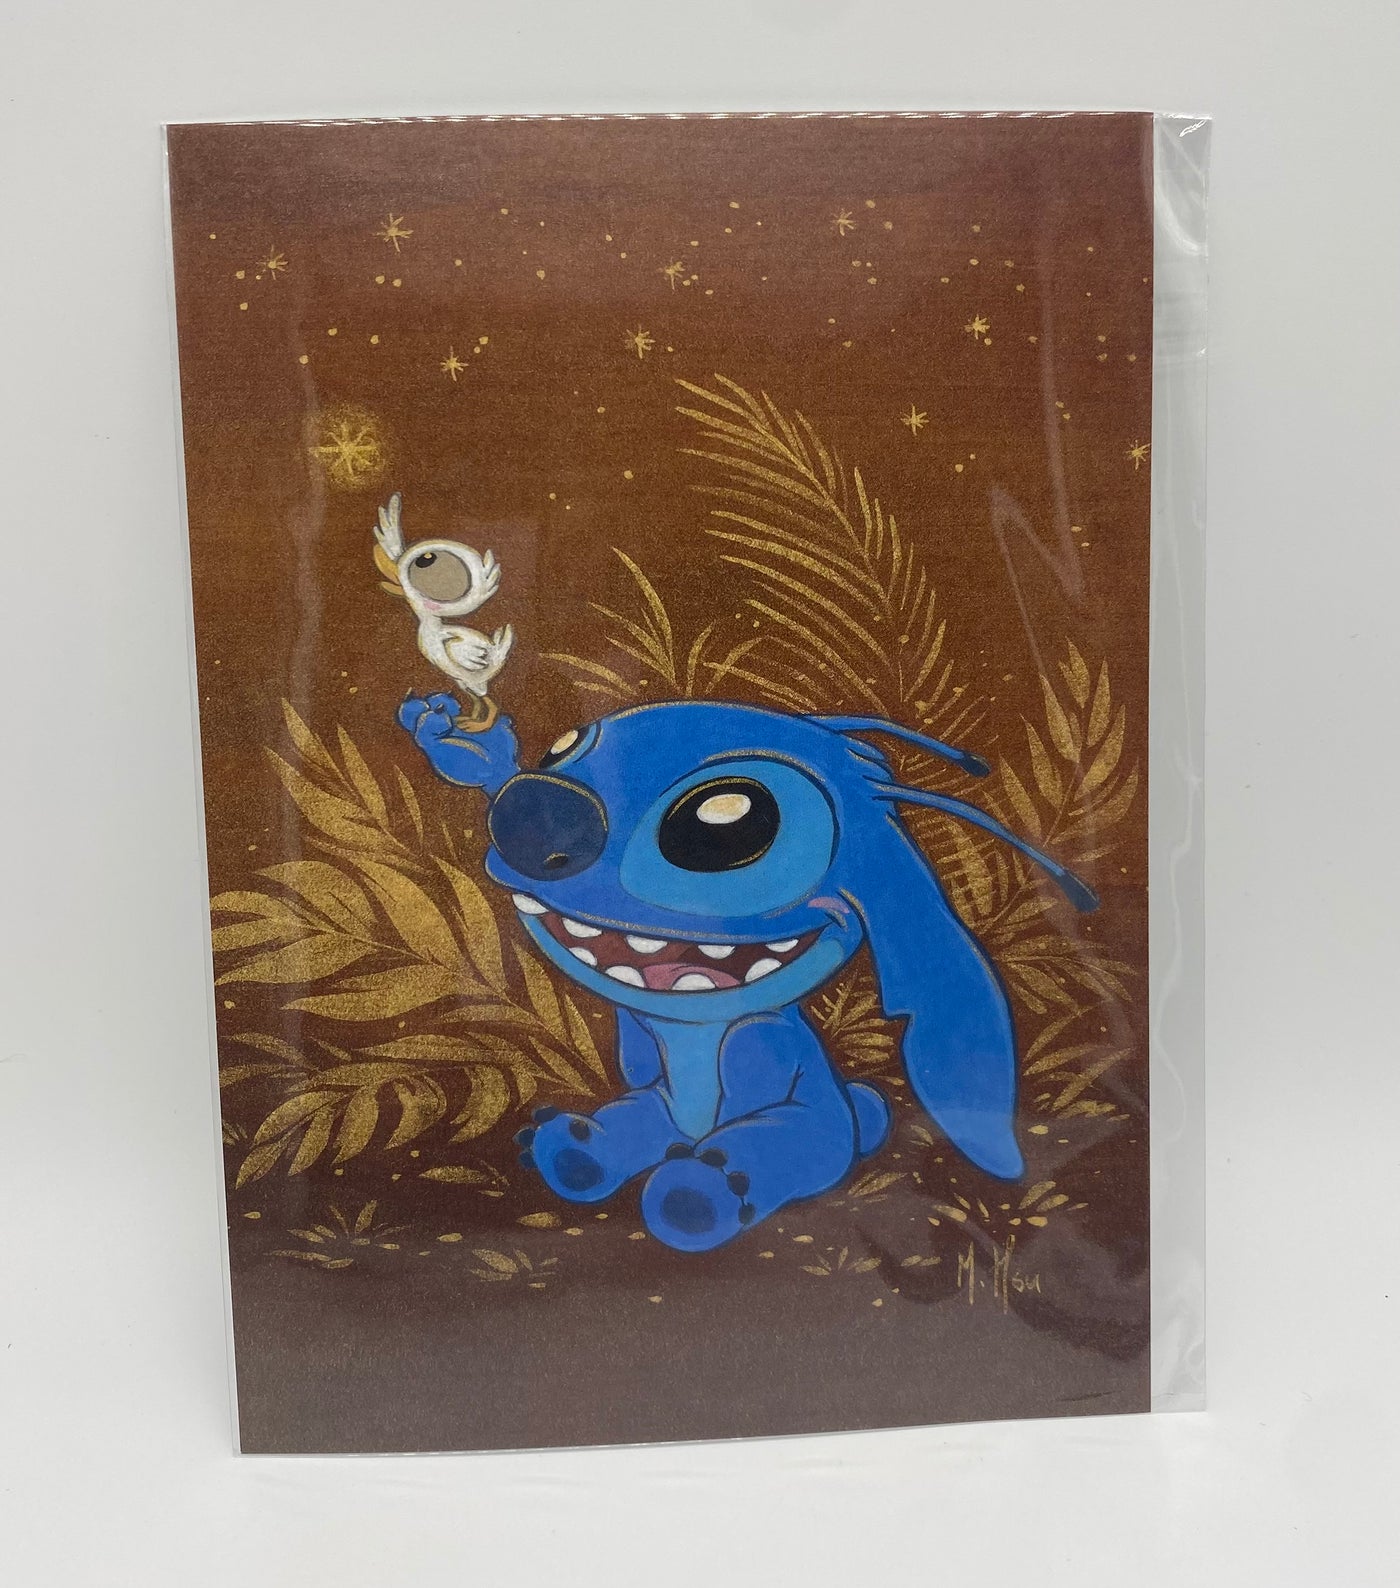 Disney Stitch by Martin Hsu Postcard Wonderground Gallery New